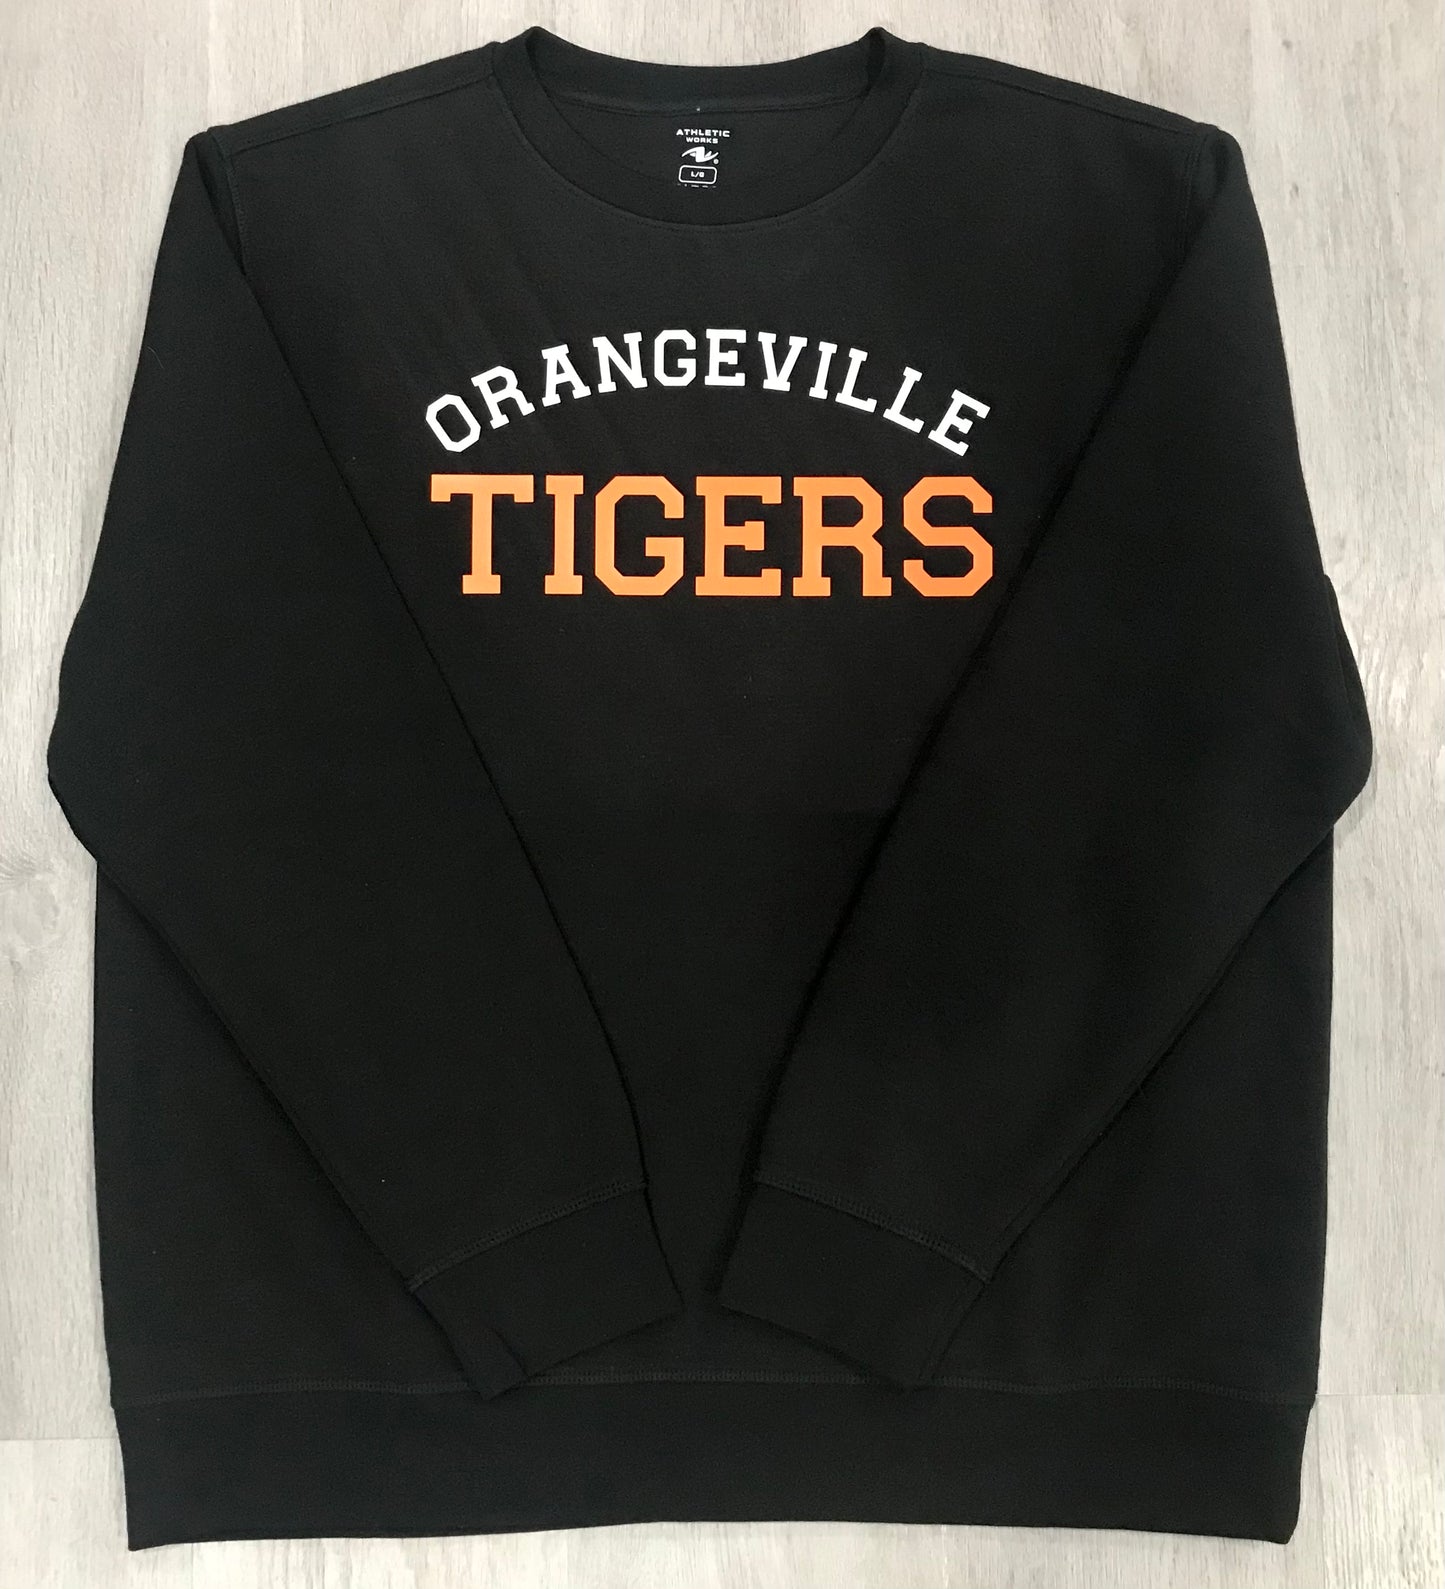 Orangeville tigers sweatshirt